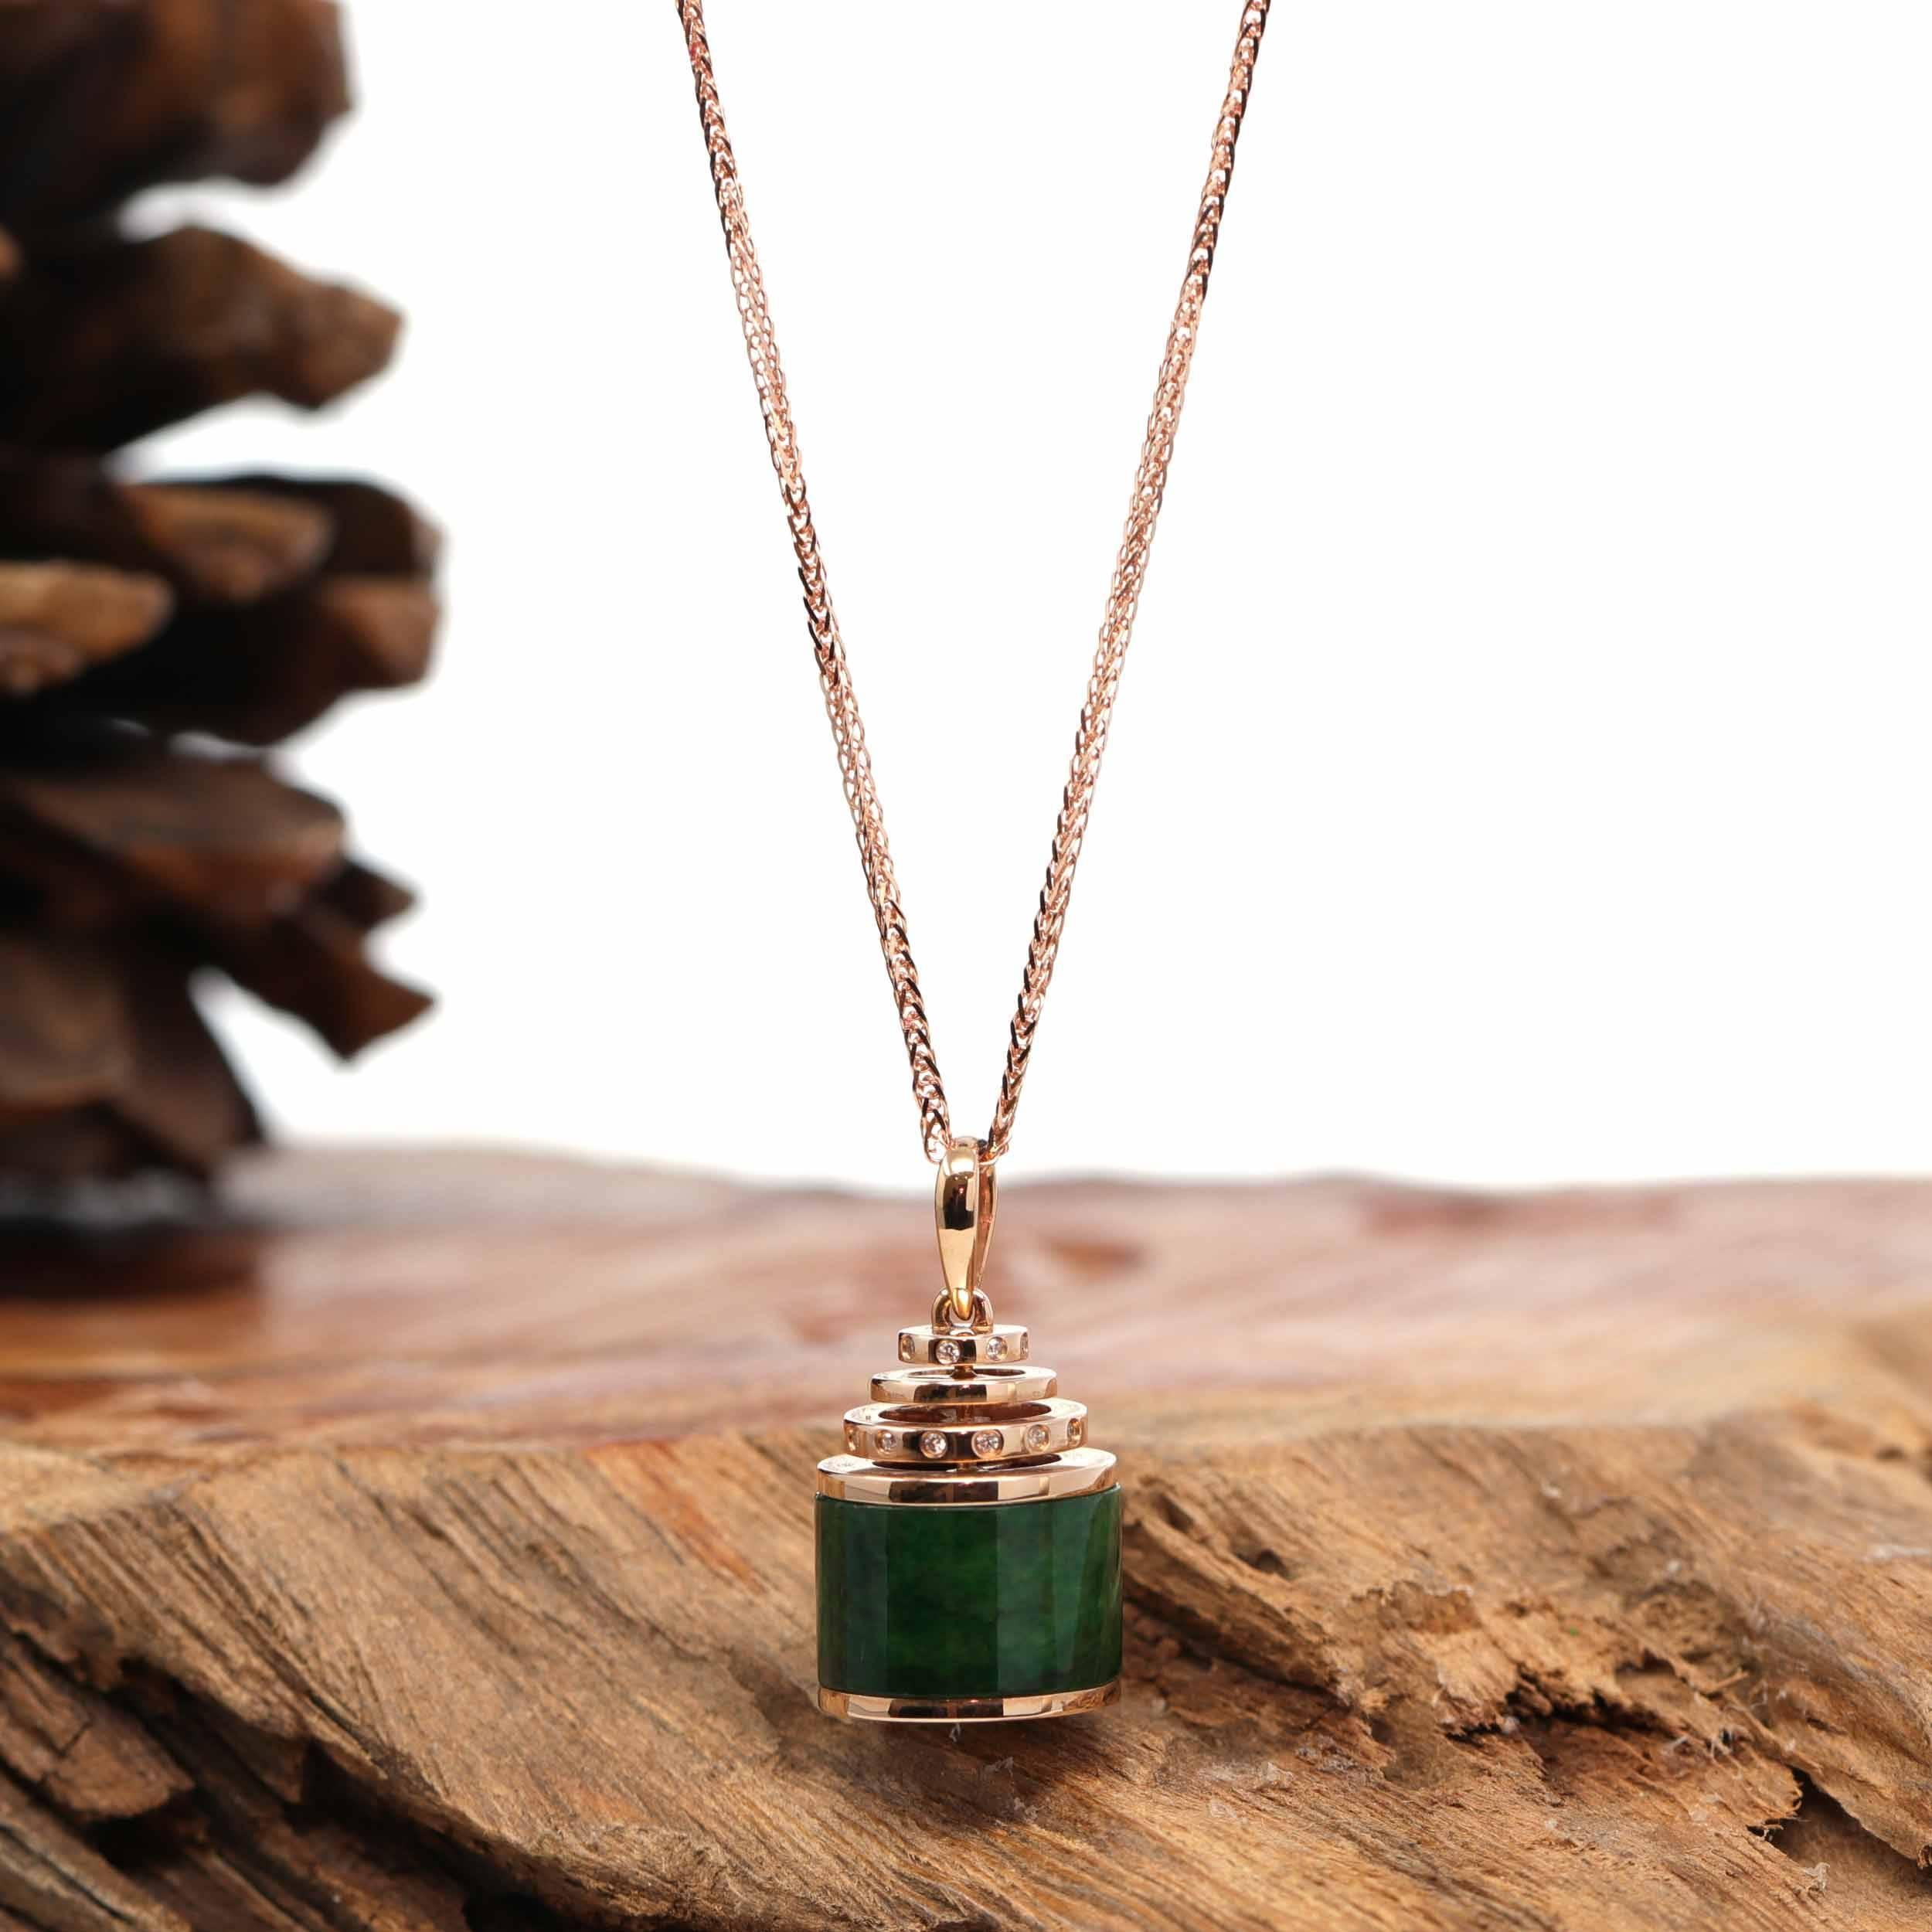 * CONCEPT DE CONCEPTION--- Ce collier est composé de jadéite birmane verte impériale ovale. Le design a été inspiré par le moulin à prières traditionnel. Une version moderne d'un symbole traditionnel. Représente la plénitude, l'intégralité et le